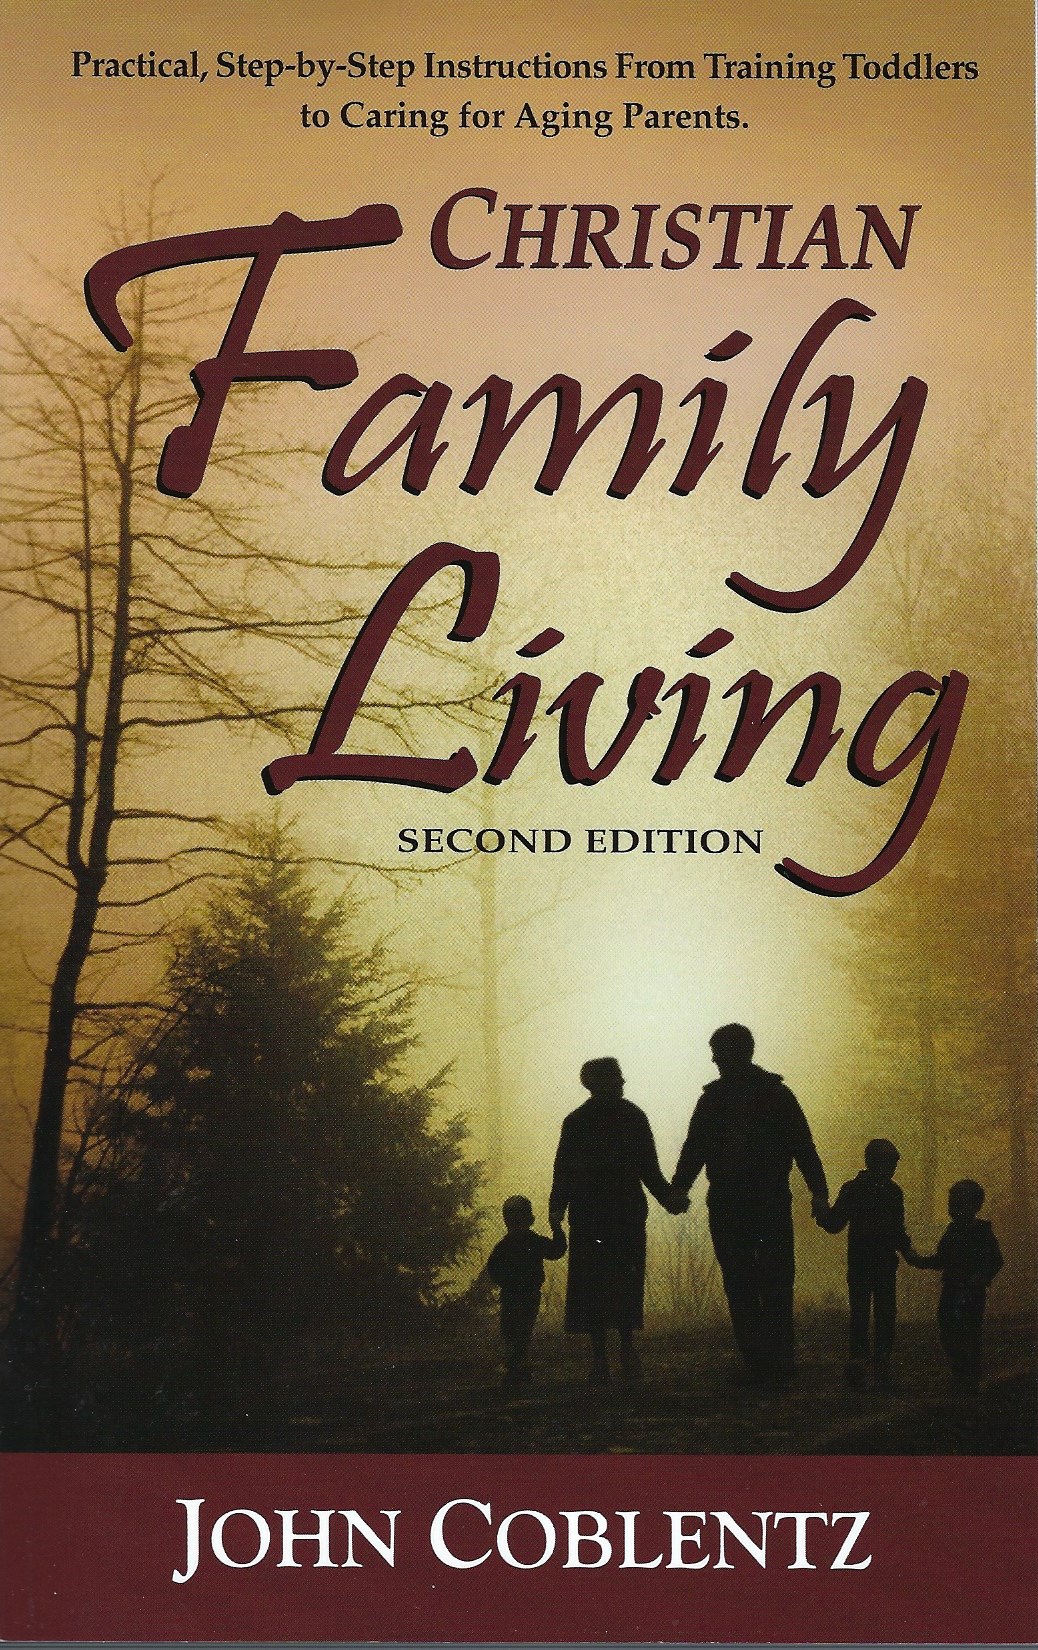 CHRISTIAN FAMILY LIVING, 2ND ED. by John Coblentz